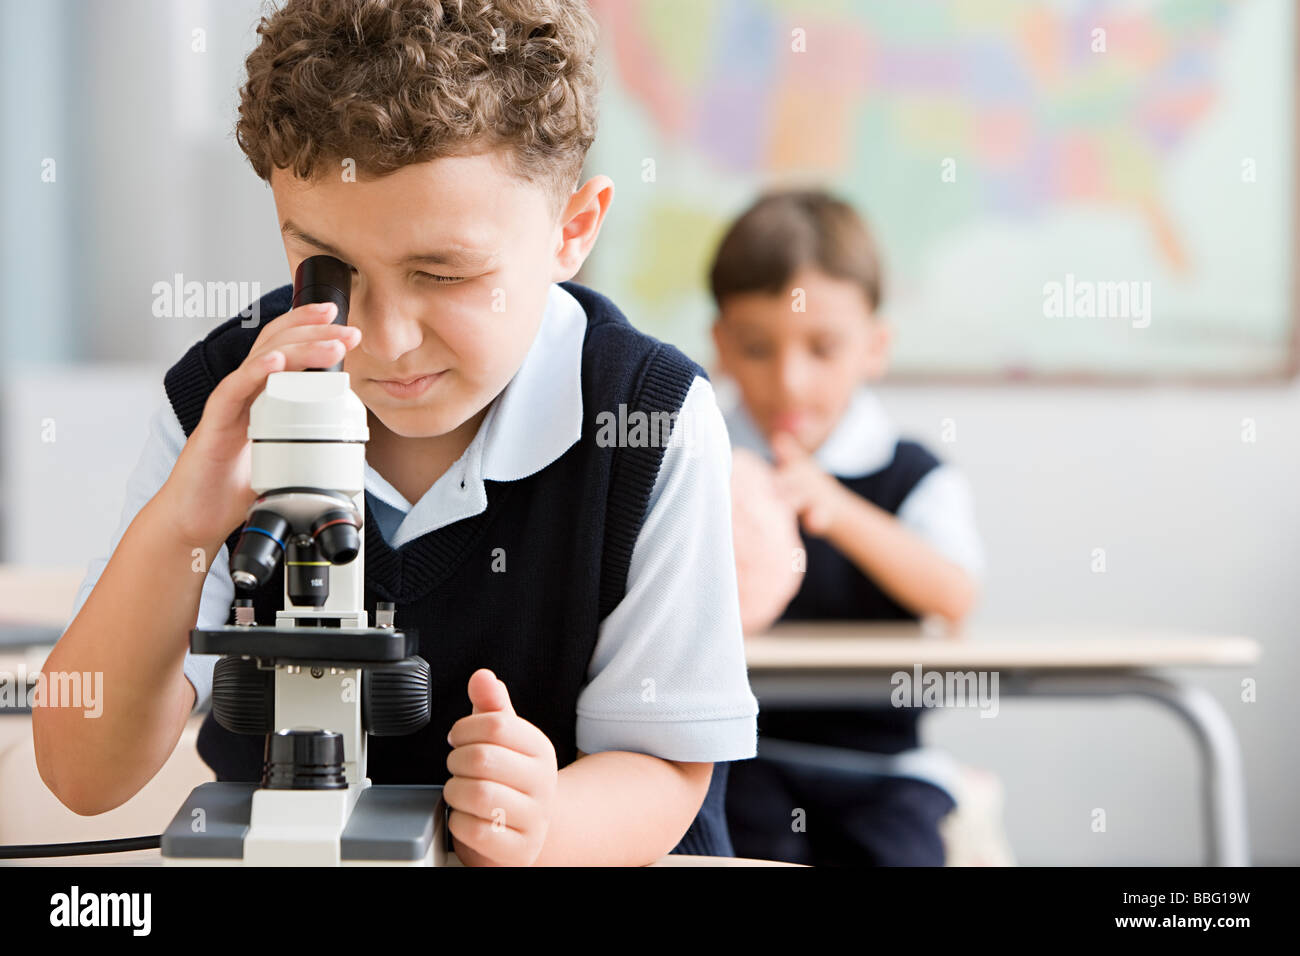 El colegial con microscopio Foto de stock